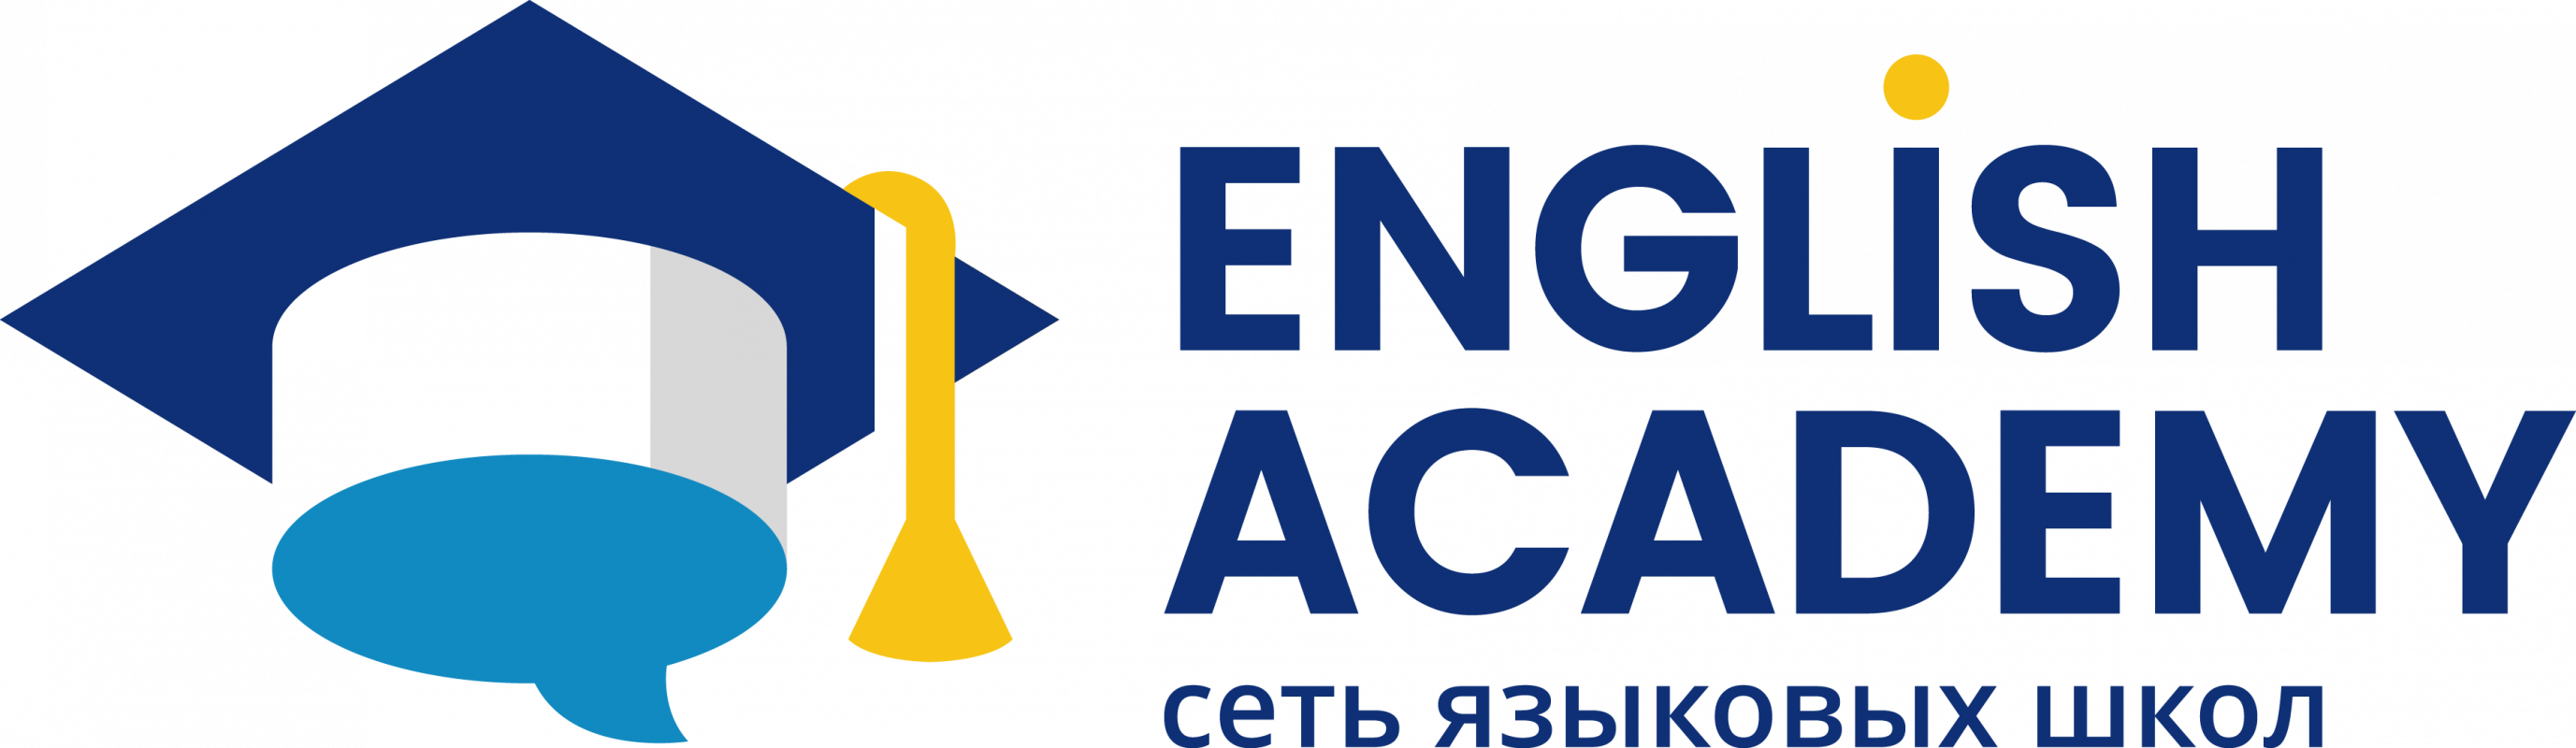 Сеть языковых школ English Academy: отзывы от сотрудников и партнеров